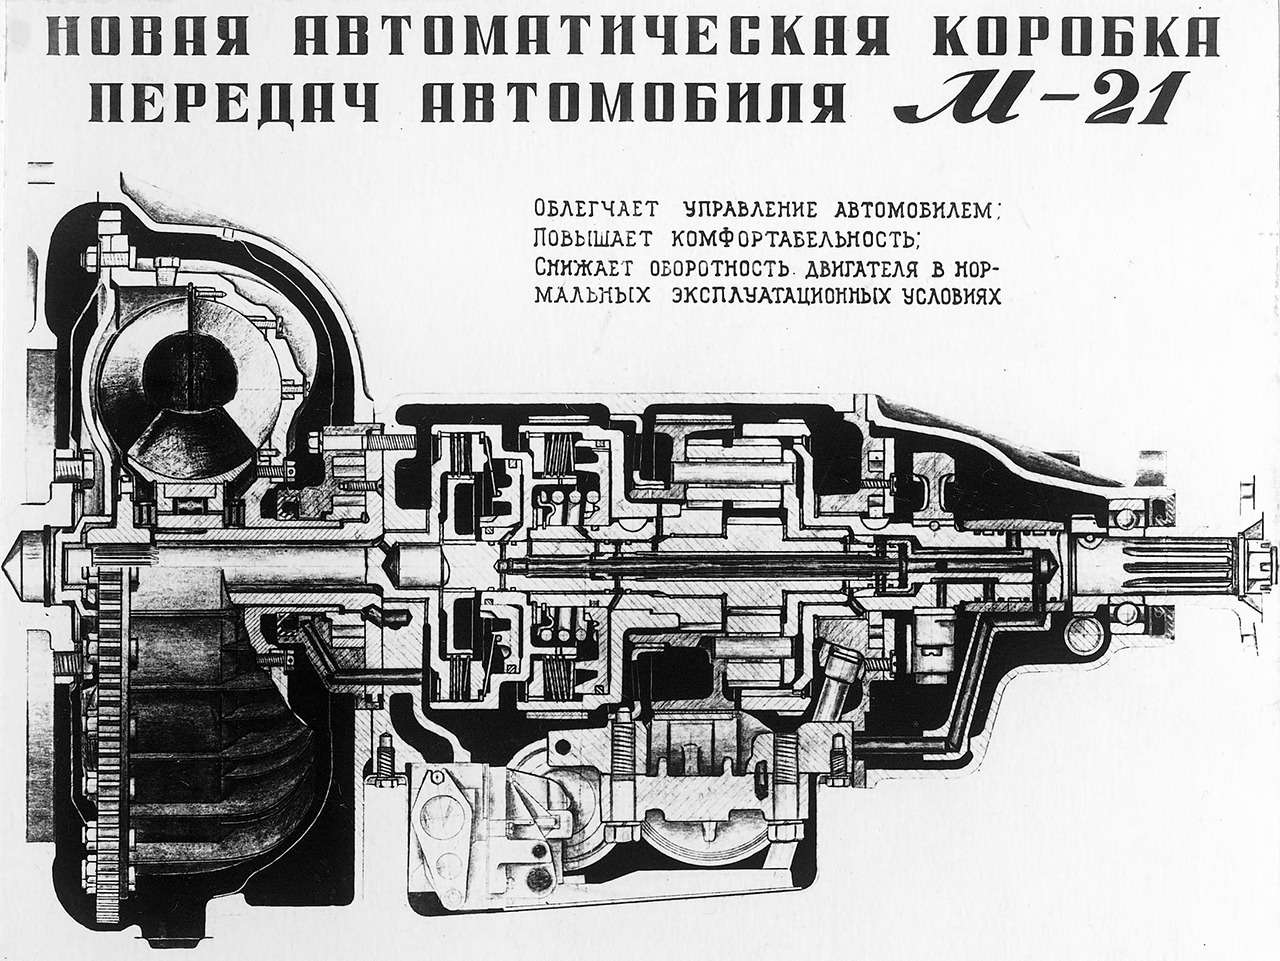 Коробка передач Волги ГАЗ-М21.